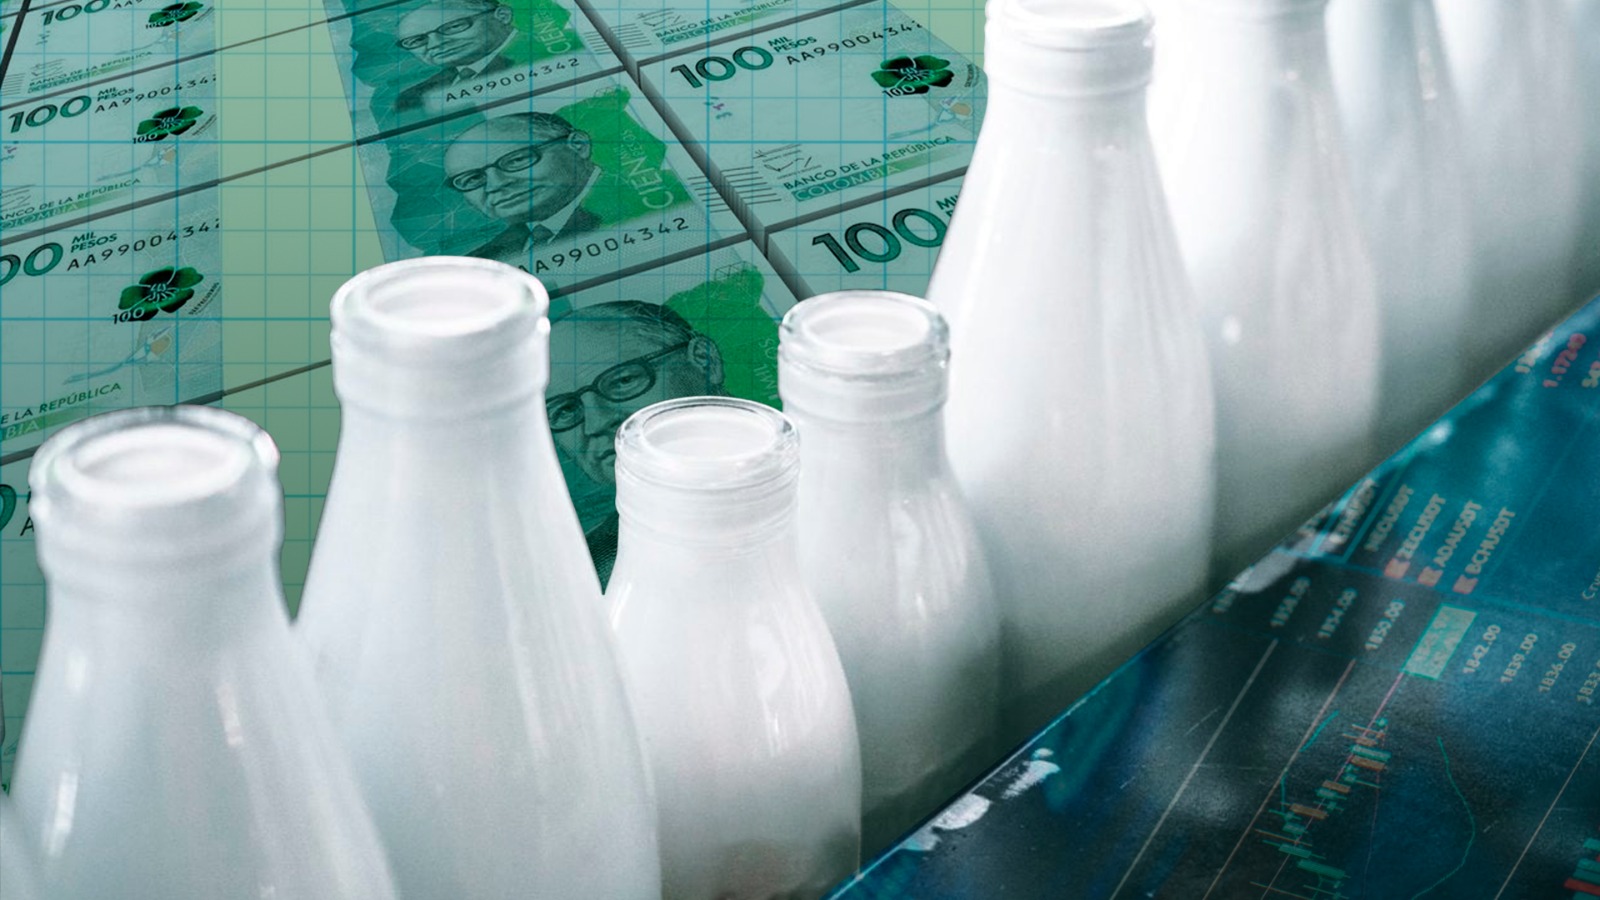 Costo de la leche subiría de manera considerable por el nuevo precio base pagado a productores